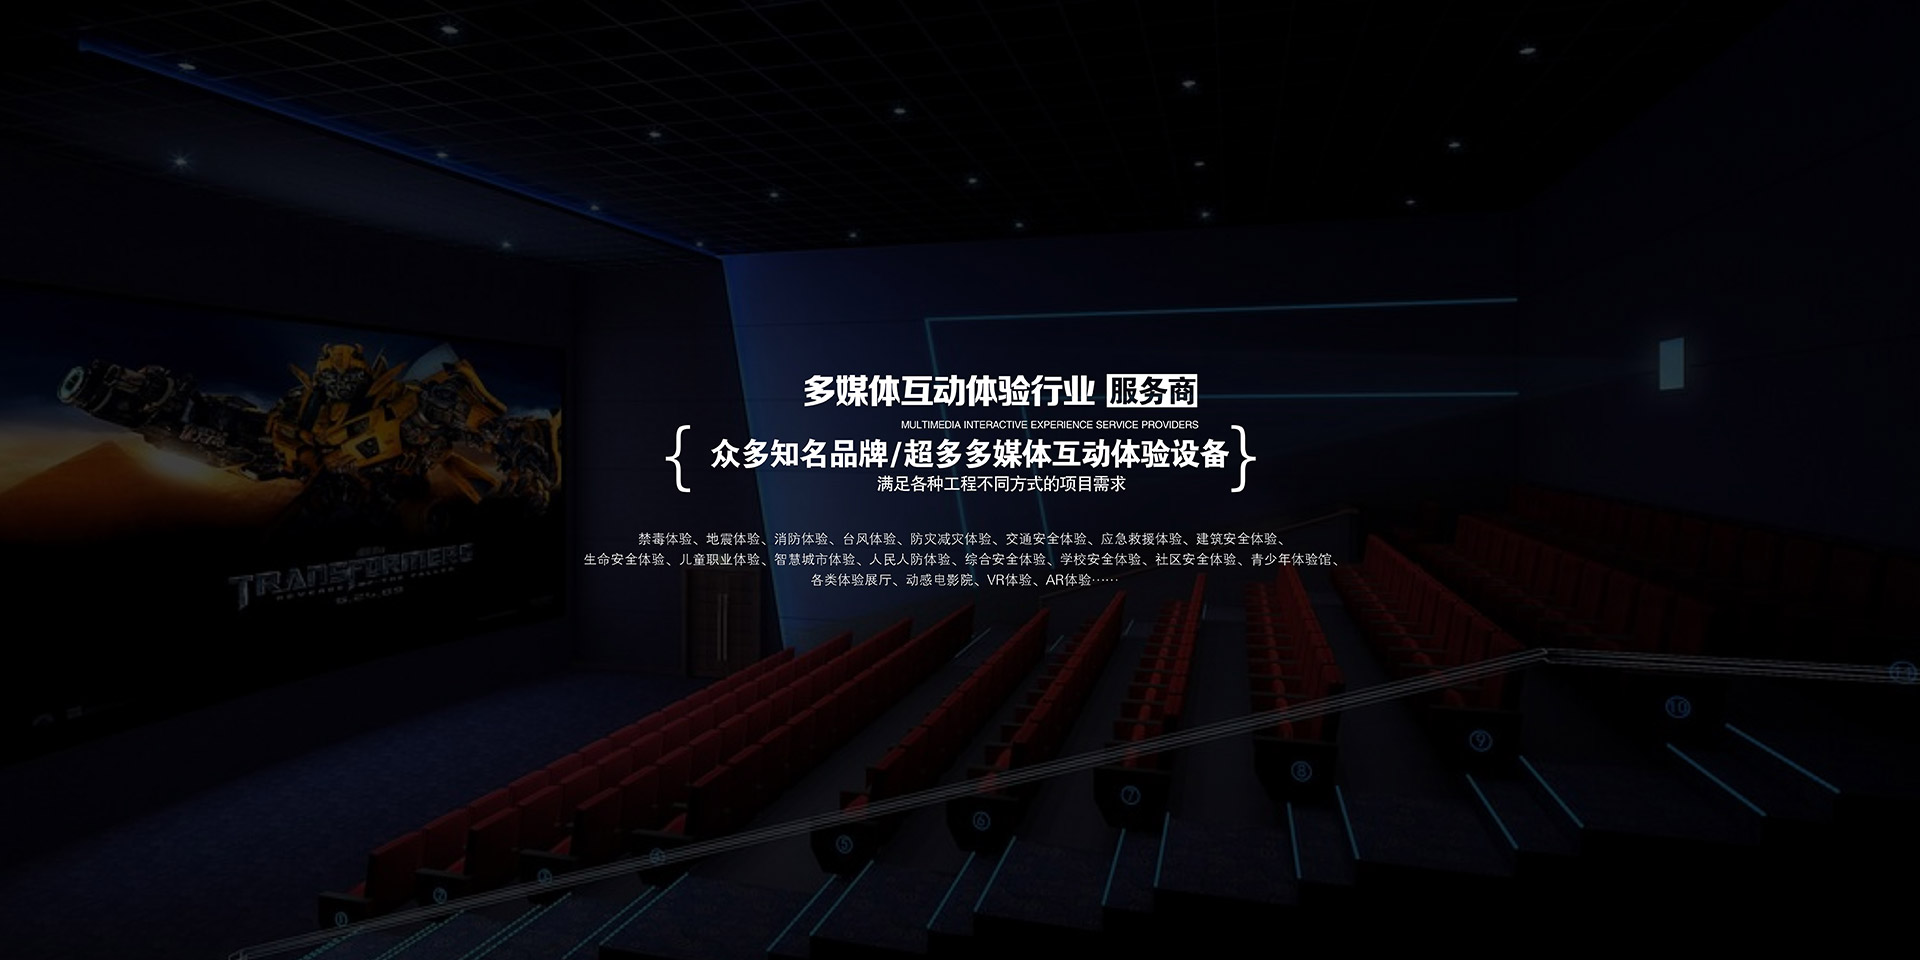 北京海嘯綠色智慧投影系統,北京海嘯智能電網,北京海嘯天幕劇場,北京海嘯機器人導覽,北京海嘯建筑投影,